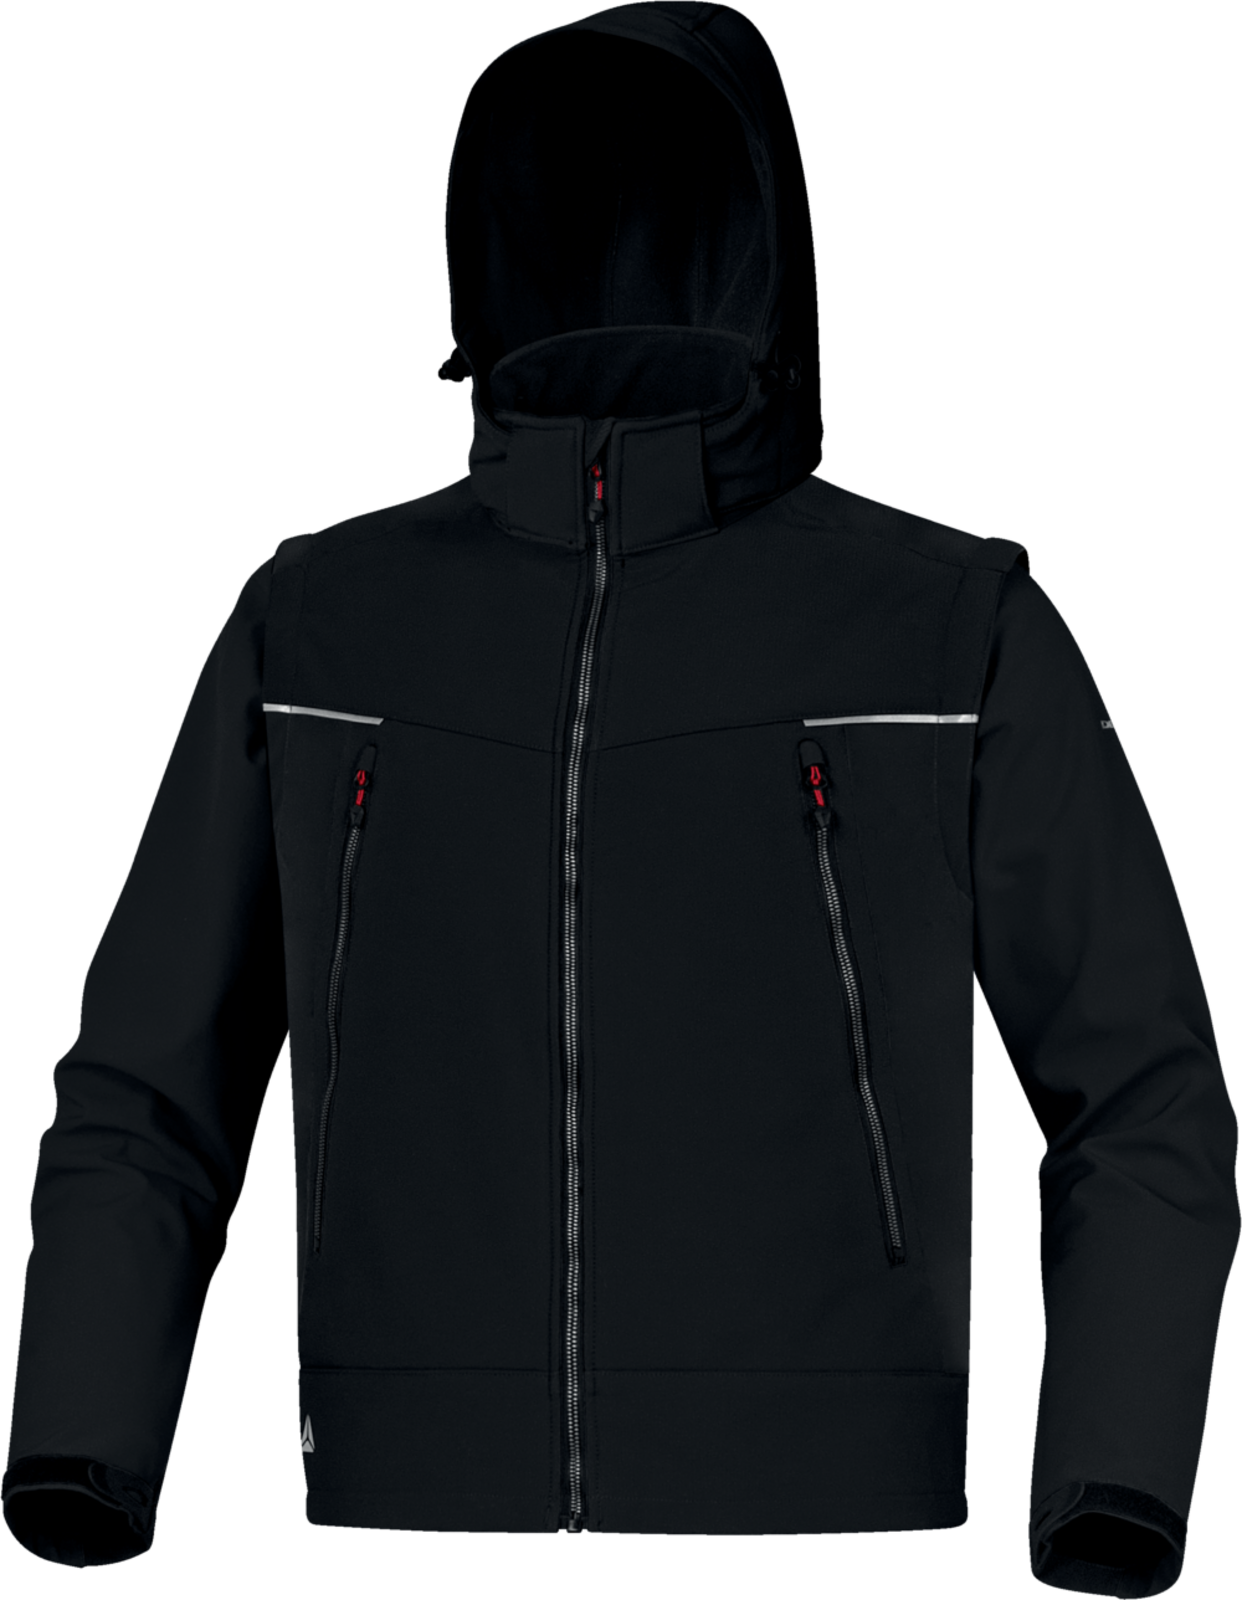 Softshellová bunda Delta Plus Orsa 2v1 - veľkosť: XXL, farba: čierna